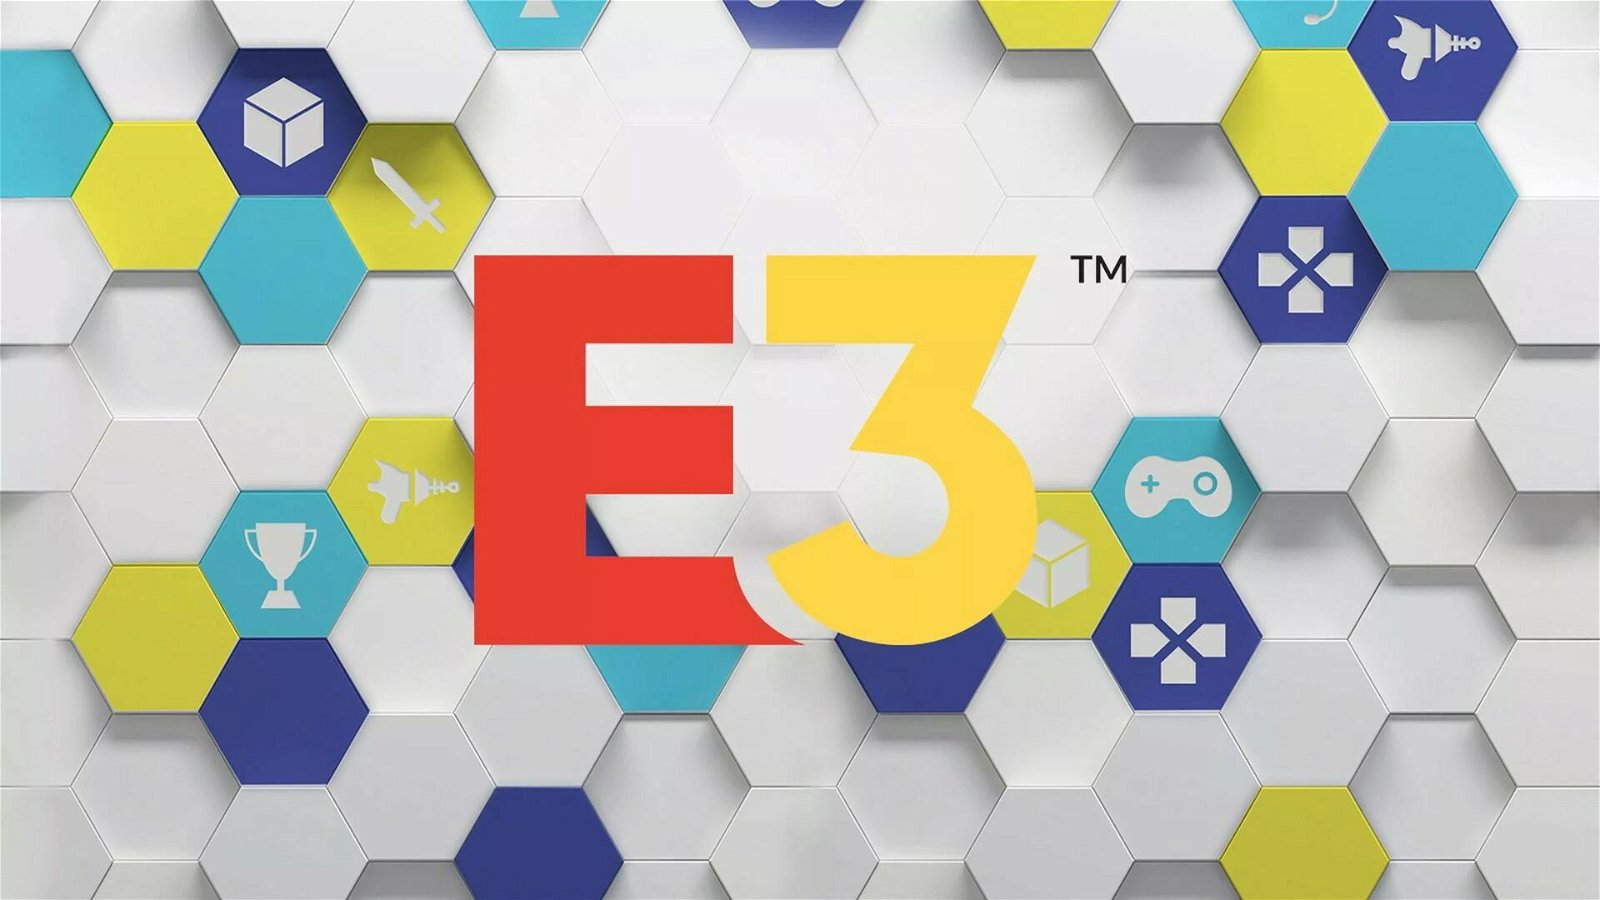 Immagine di E3 2022 confermato! L'anno prossimo si torna a Los Angeles